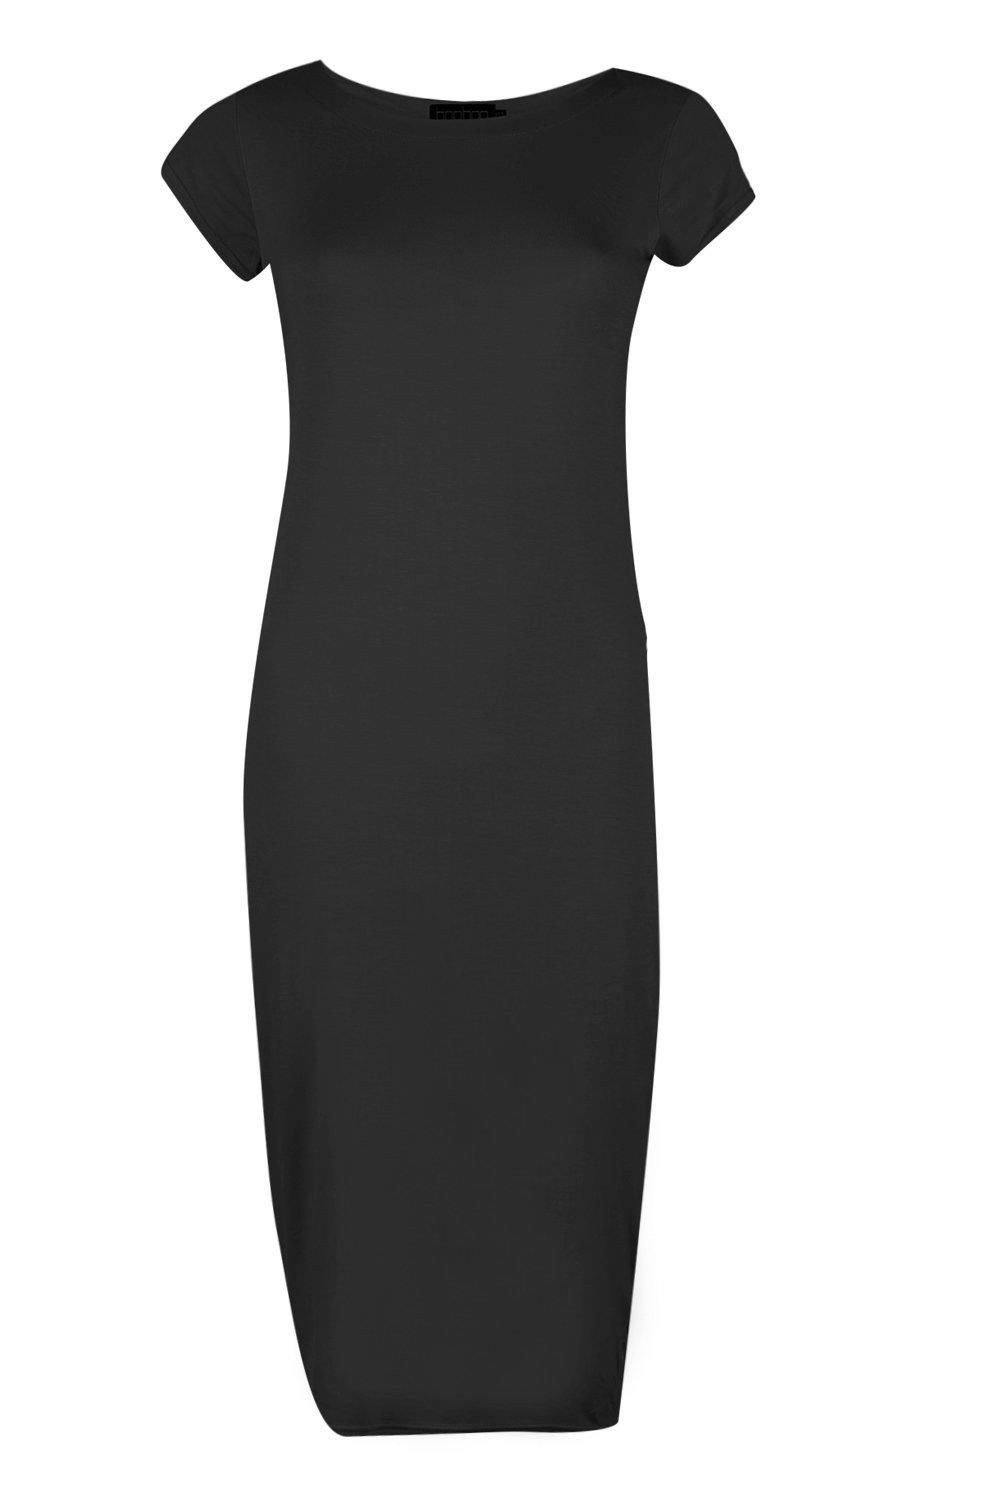 Boohoo Womens Cara Cap Sleeve Jersey Bodycon Midi Dress | eBay